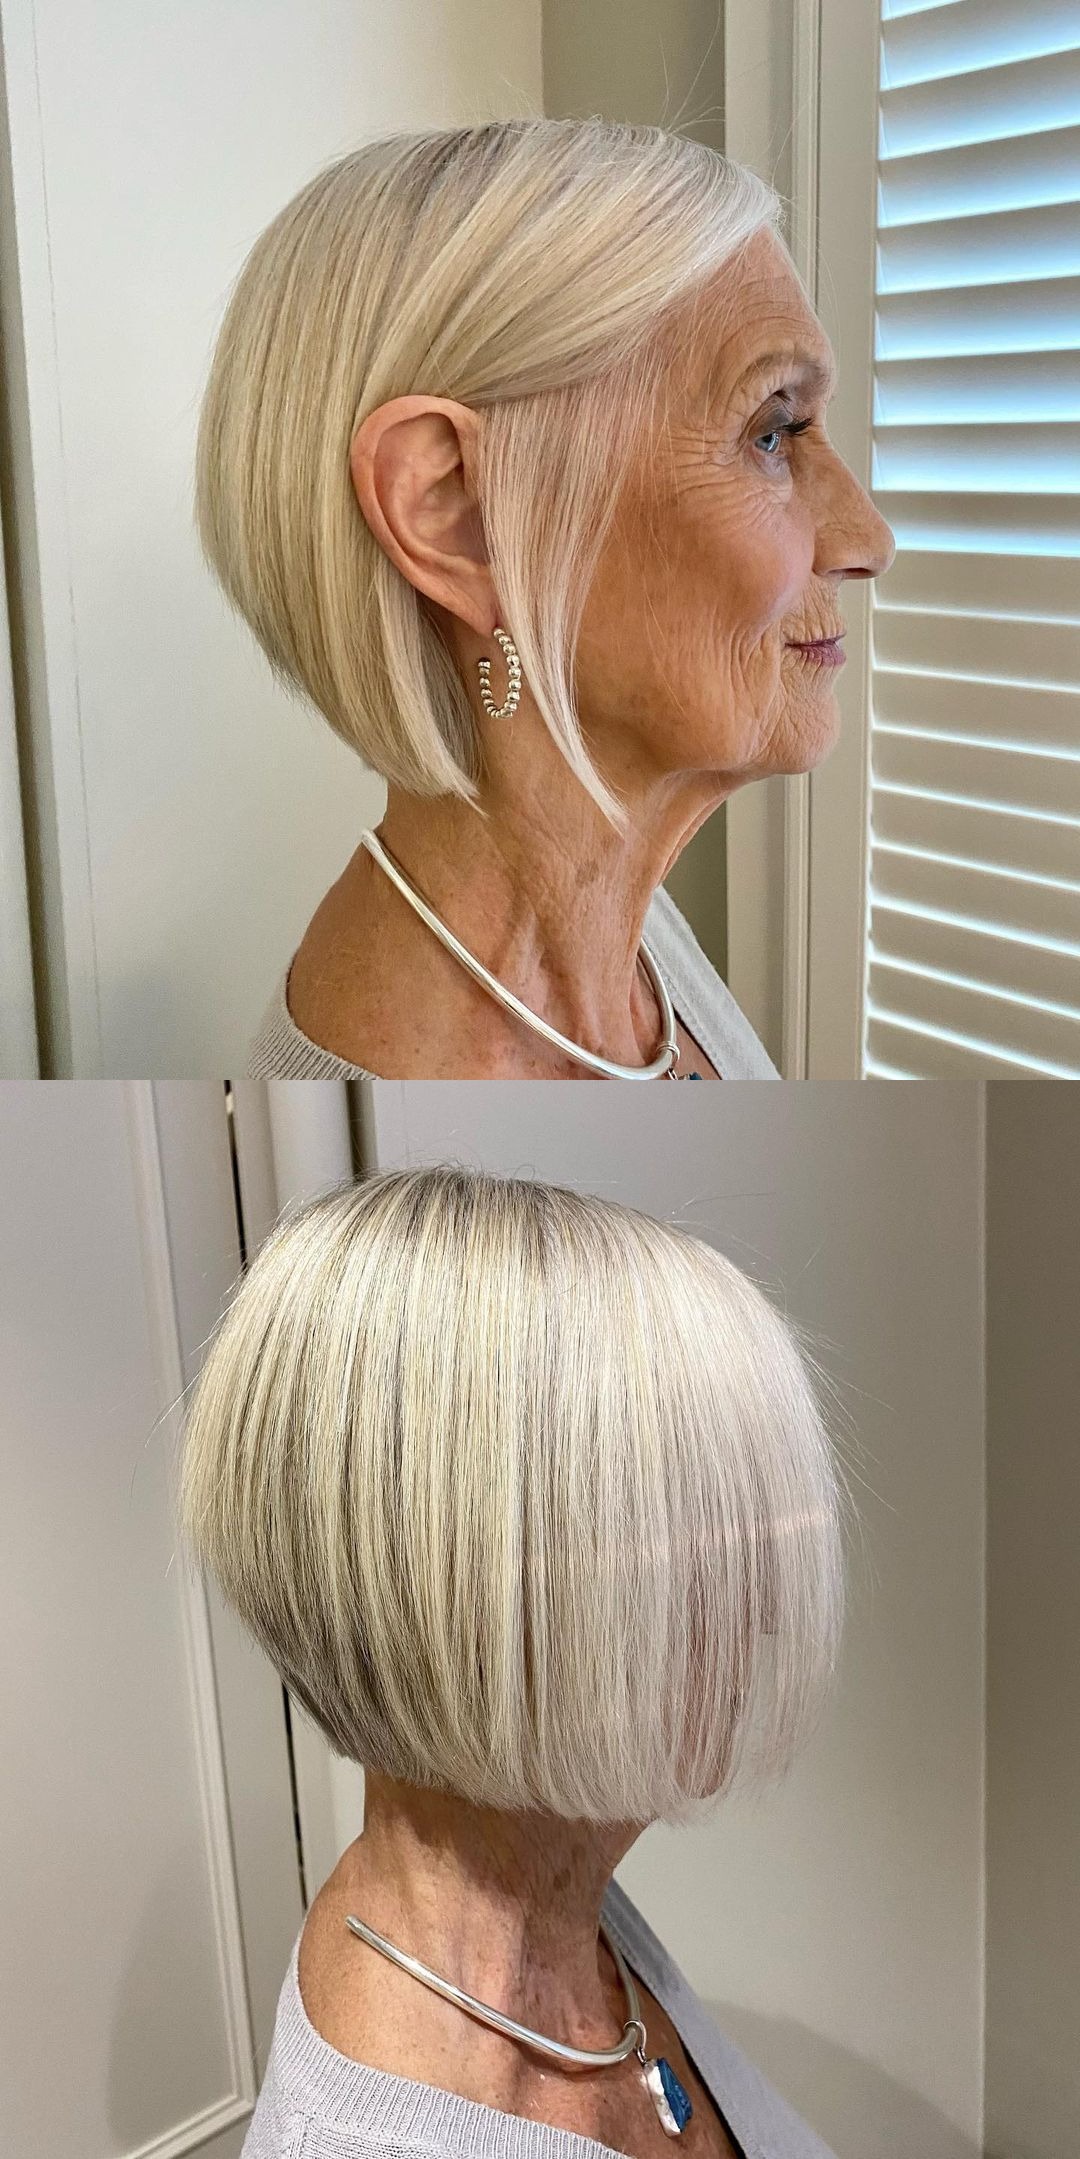 Abgestufter Haarschnitt für feines Haar bei einer Frau über sechzig